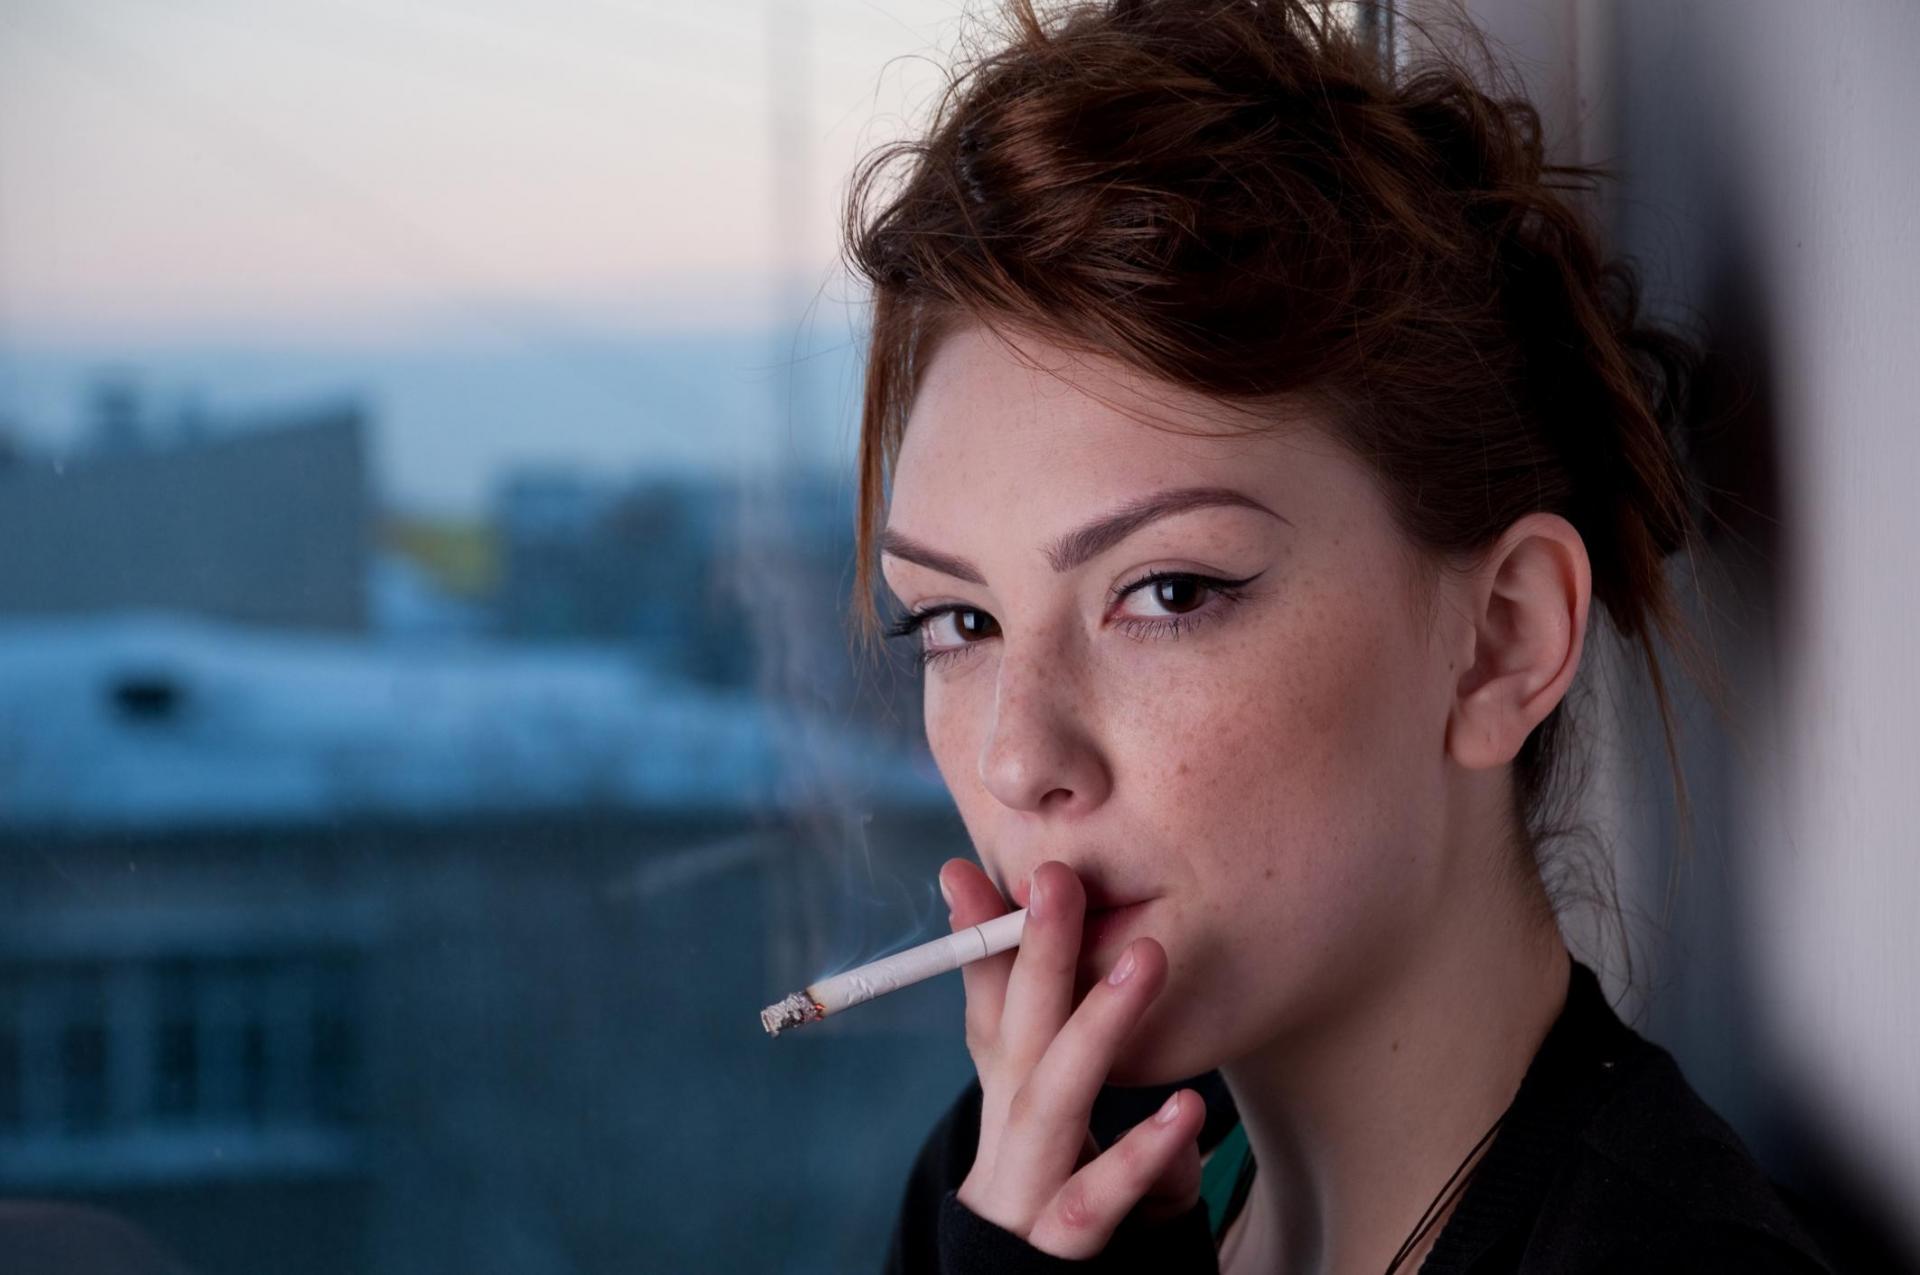 Beautiful women smoking